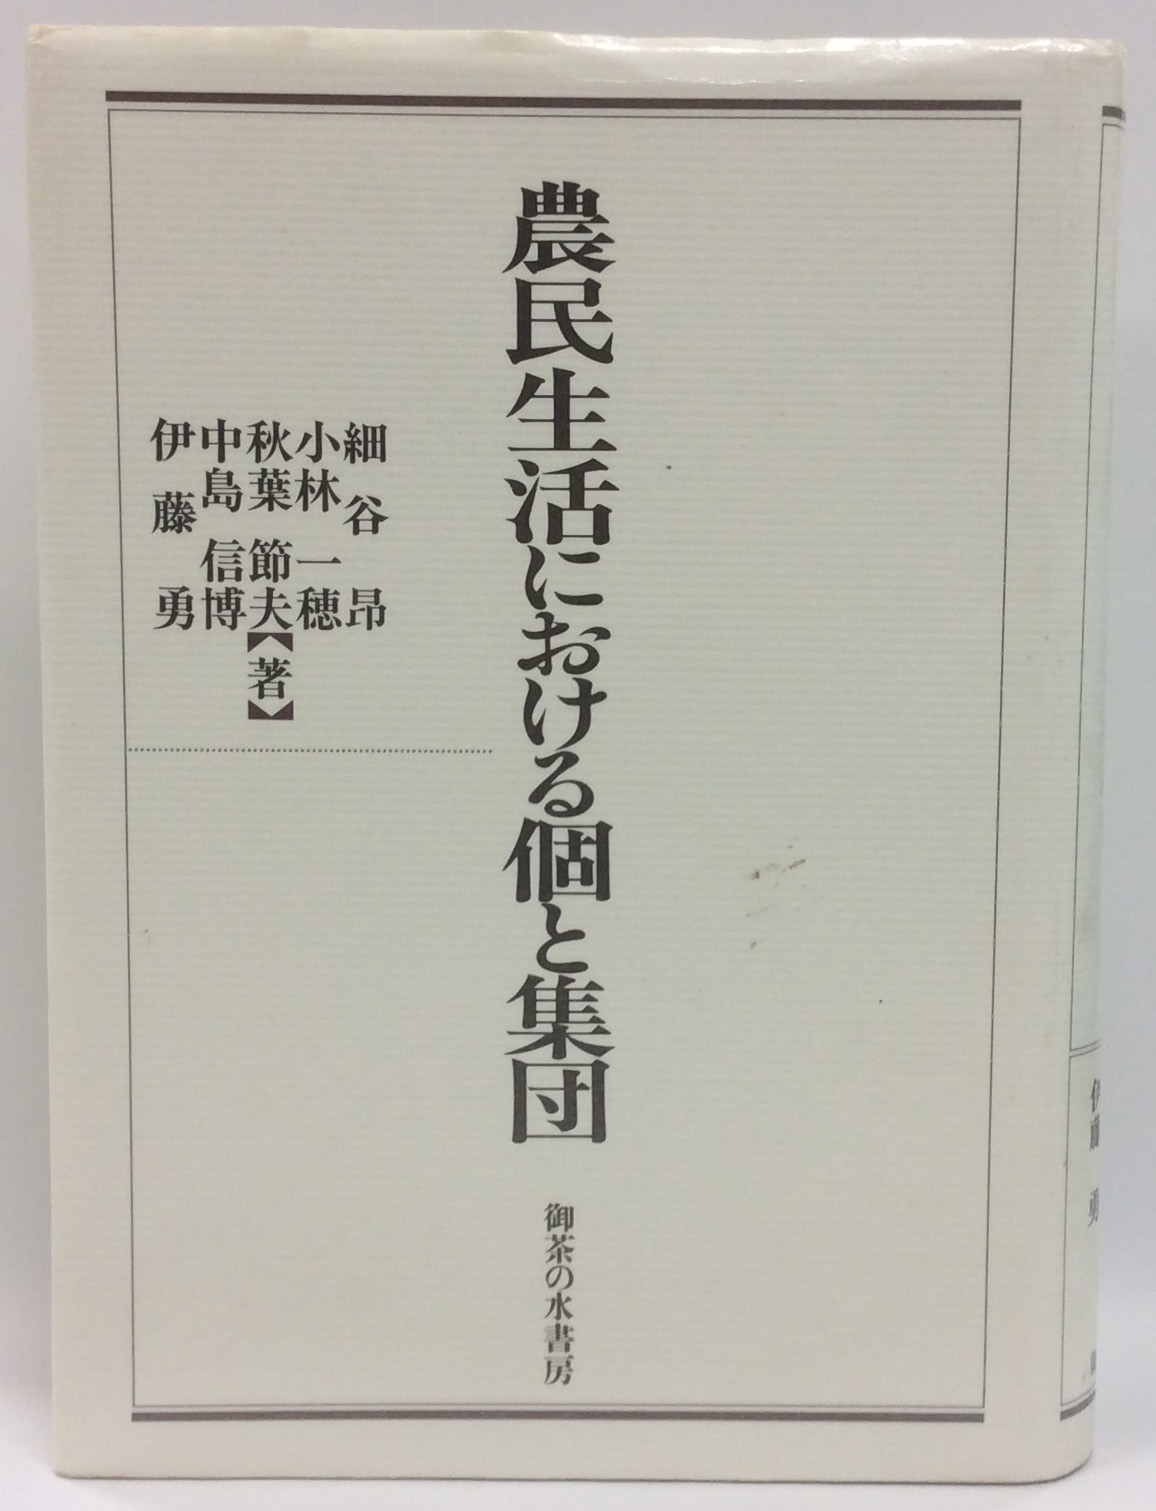 細谷昂・小林一穂・秋葉節夫・中島信博・伊藤勇 著、1993、『農民